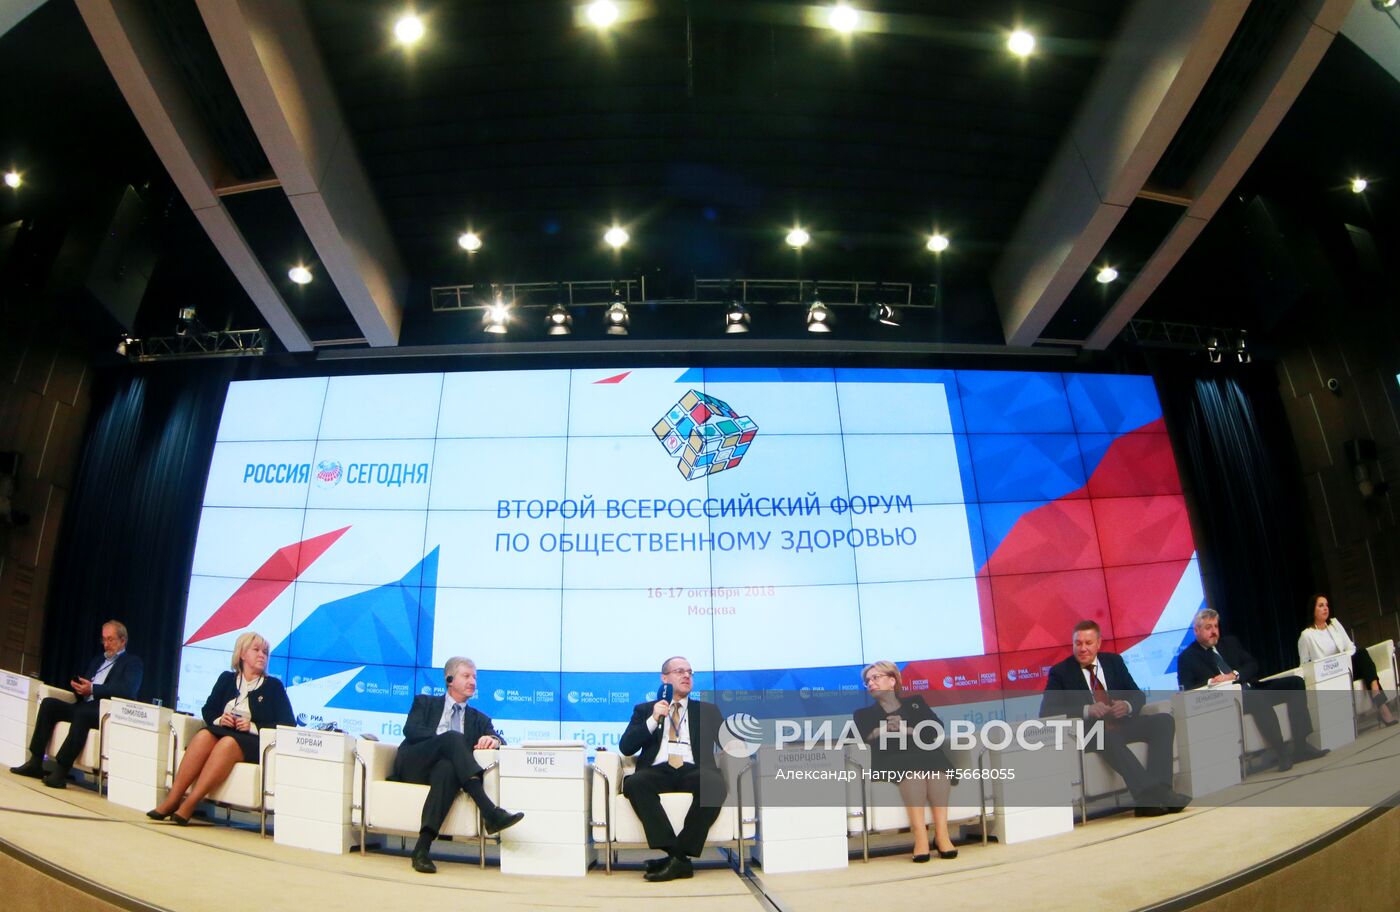 II Всероссийский форум по общественному здоровью